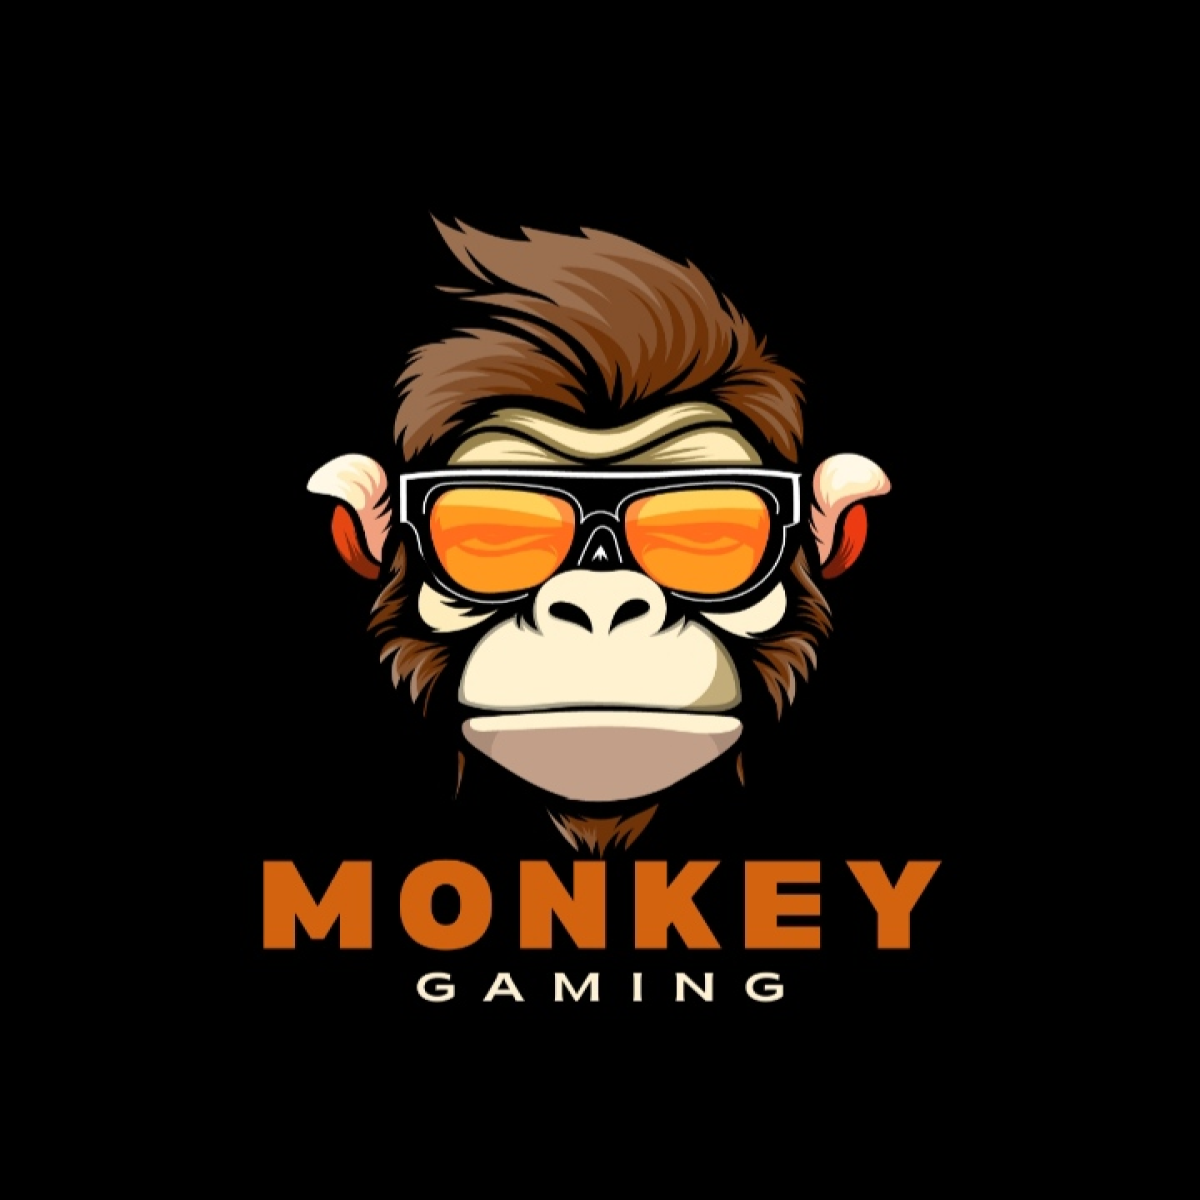 Monkey logo cover image.